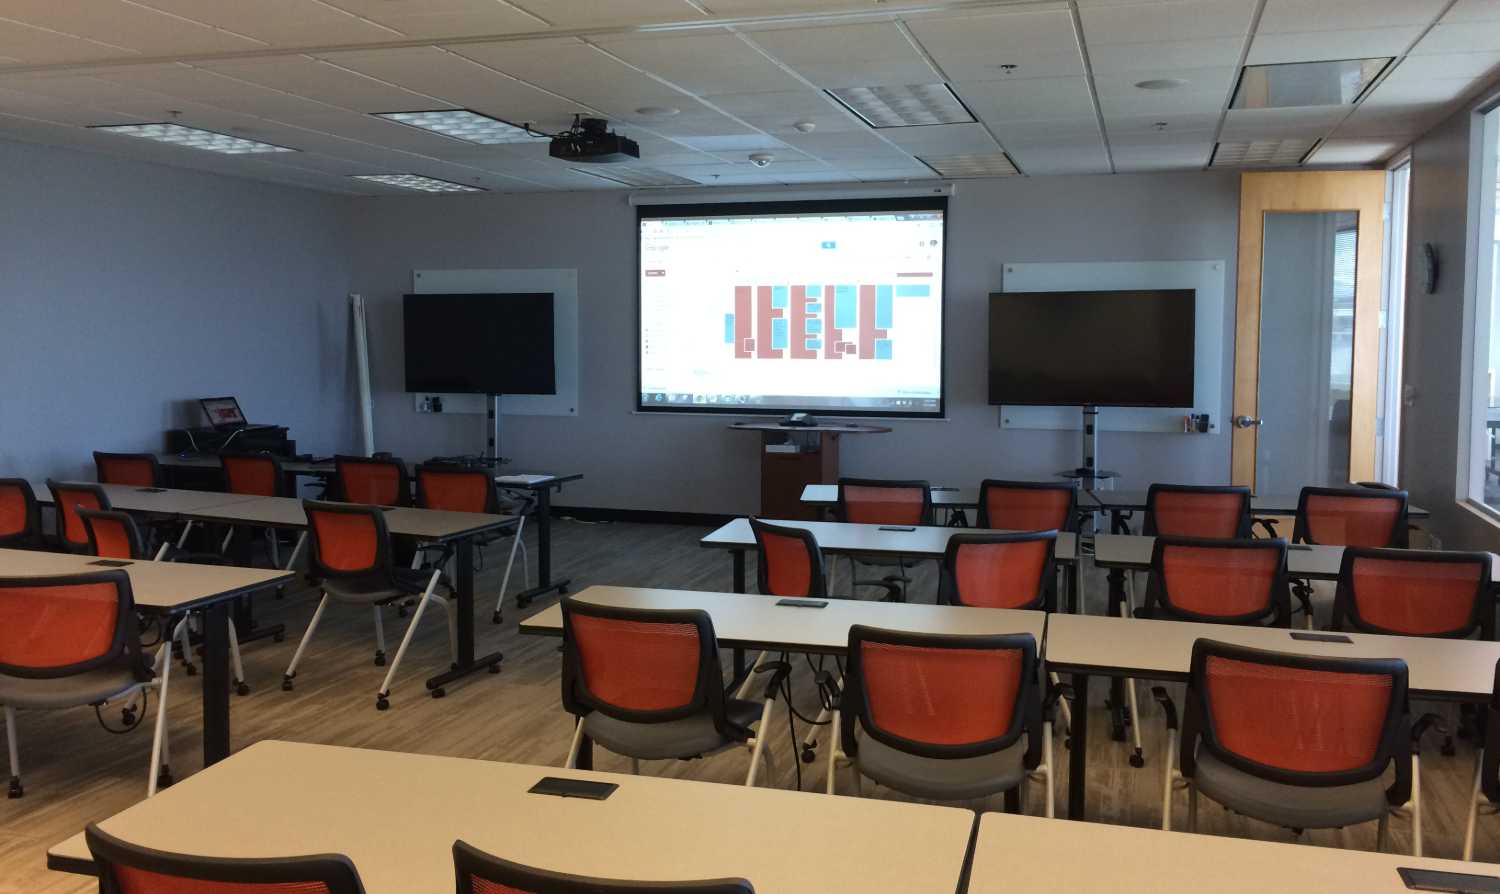 Local Business Training Room AV